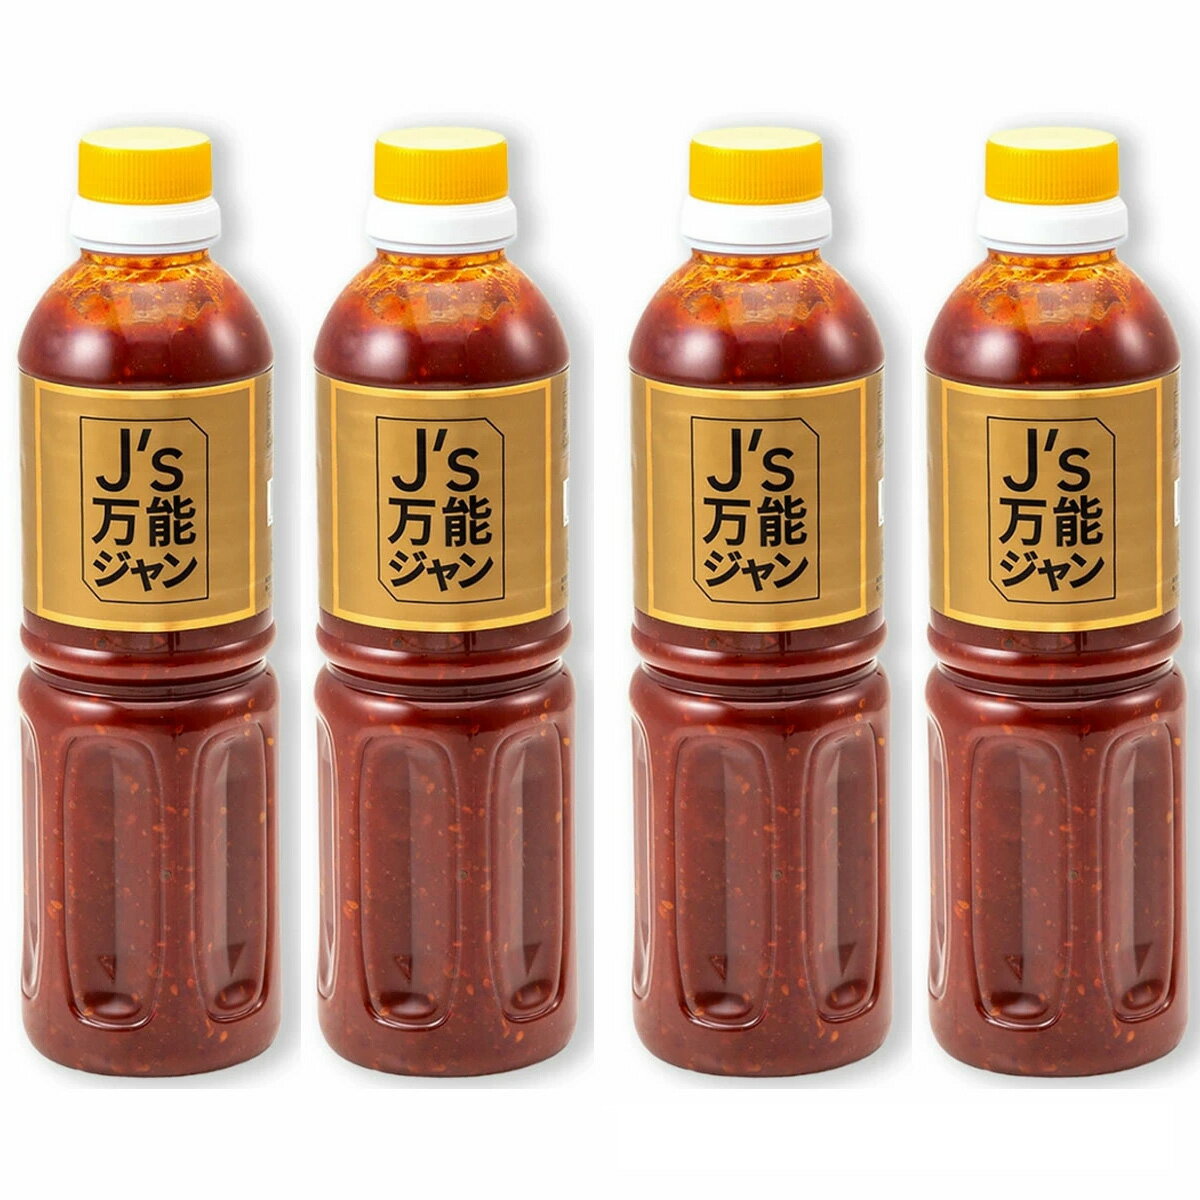 G ヒューズソース ハニーマスタードディップ - 18 オンス (6 個パック) G Hughes Sauce Honey Mustard Dipping - 18 oz (Pack of 6)